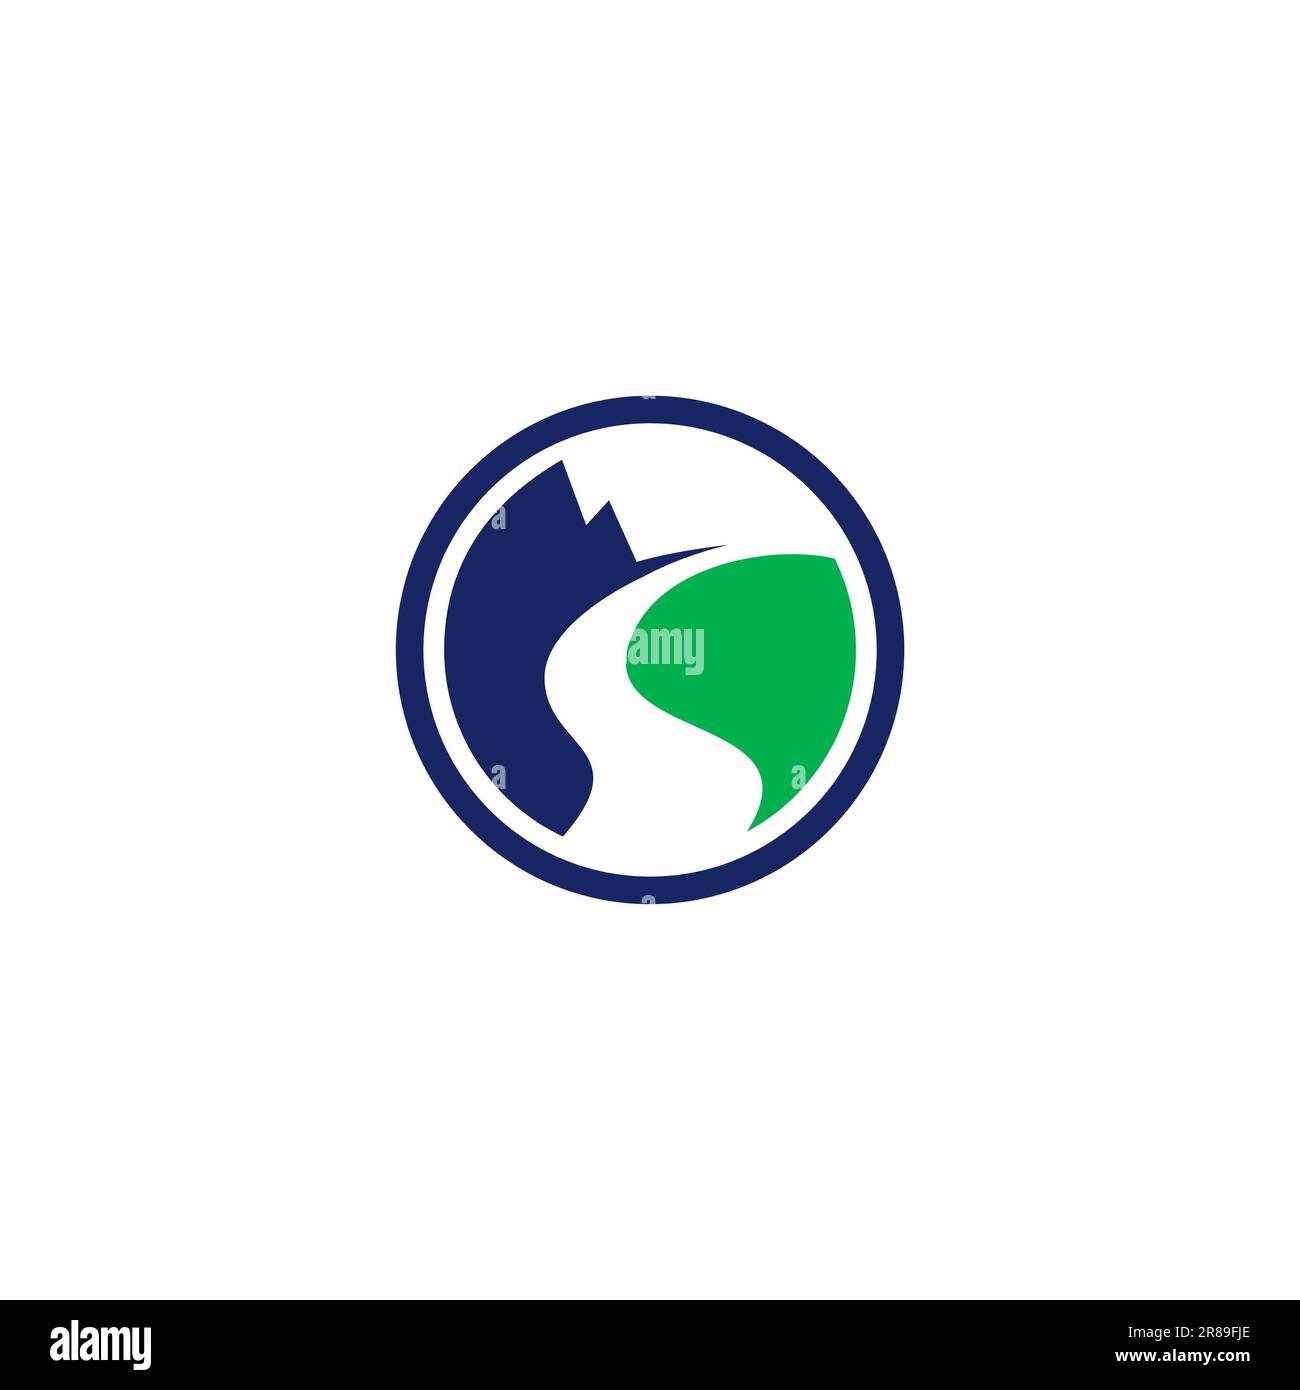 the mountains logo. mountain abstract logo design Stock Vector